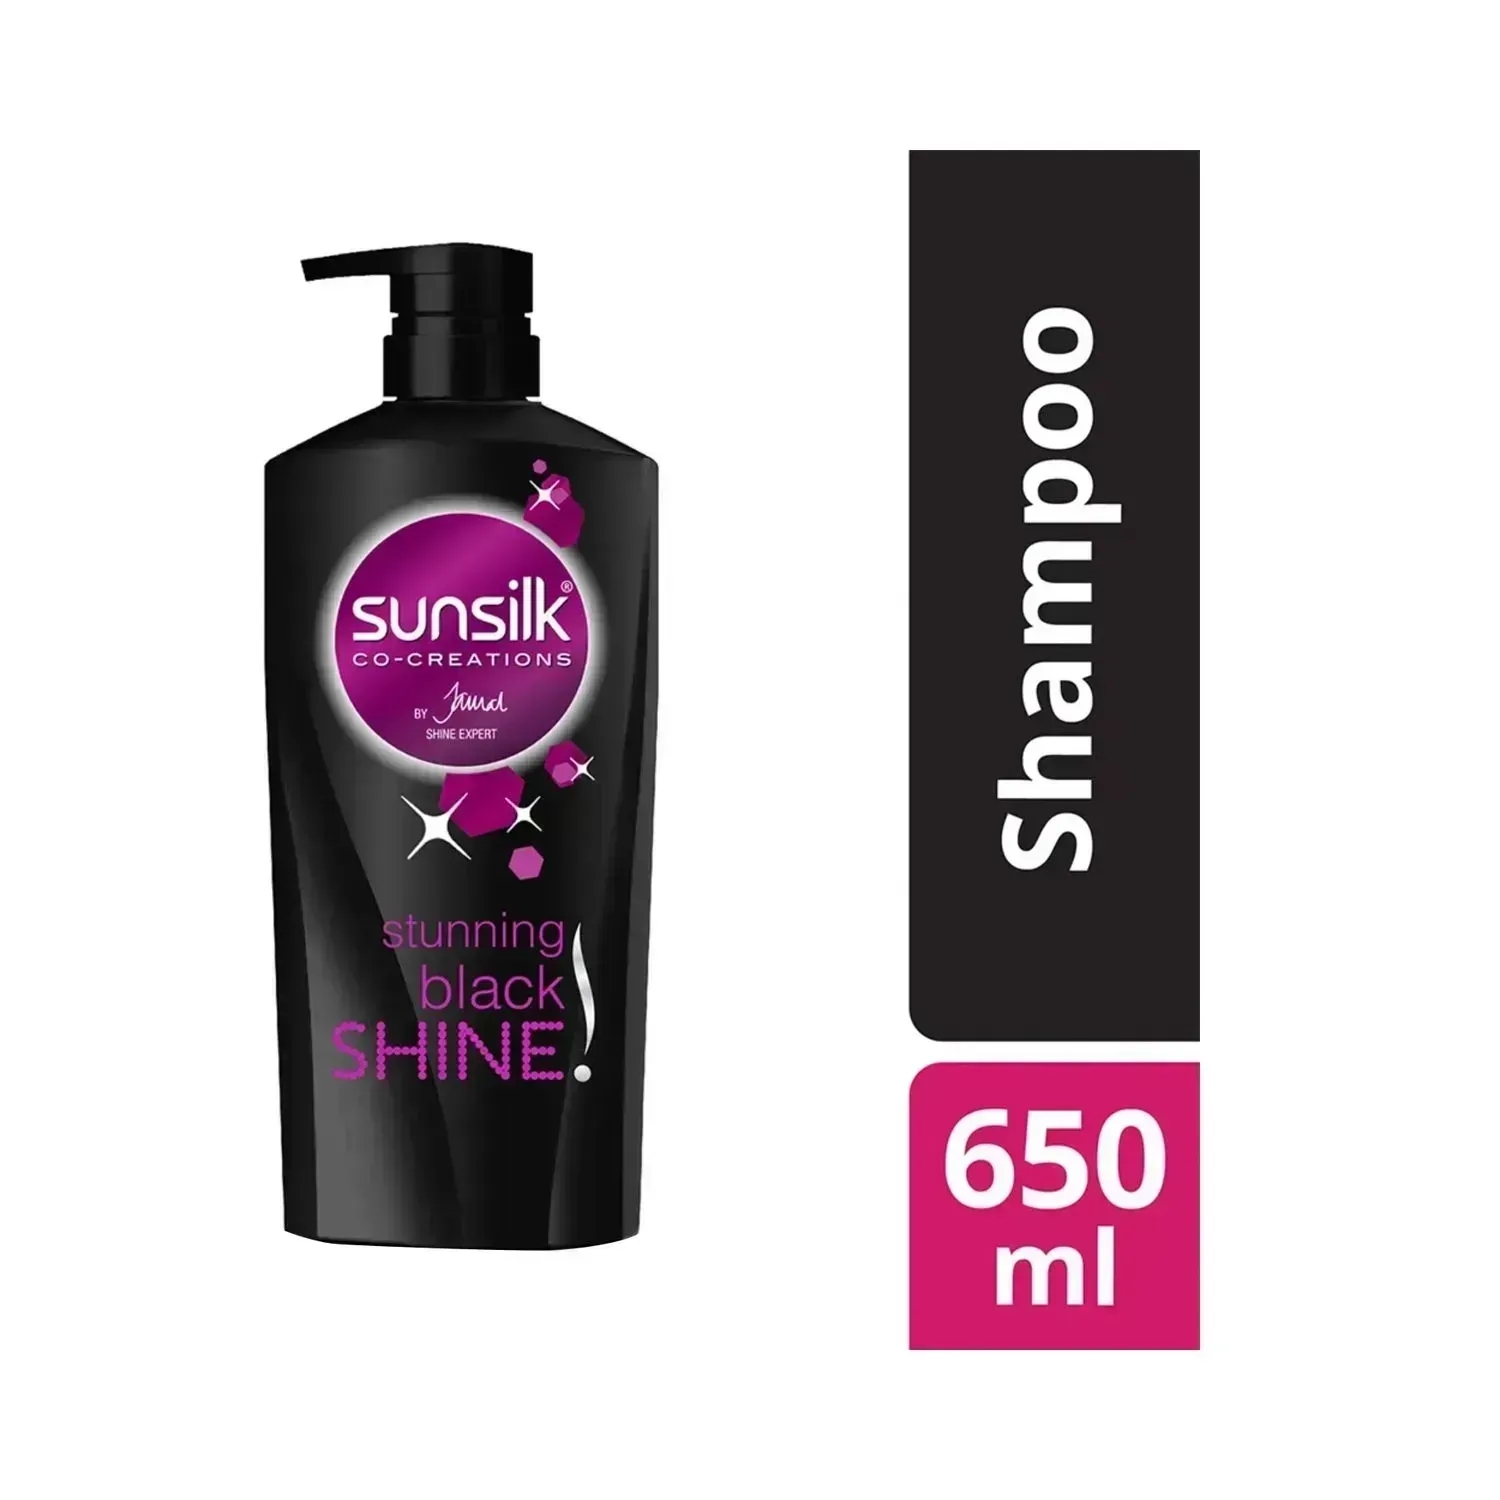 Sunsilk | Sunsilk Stunning Black Shine Shampoo - (650ml)